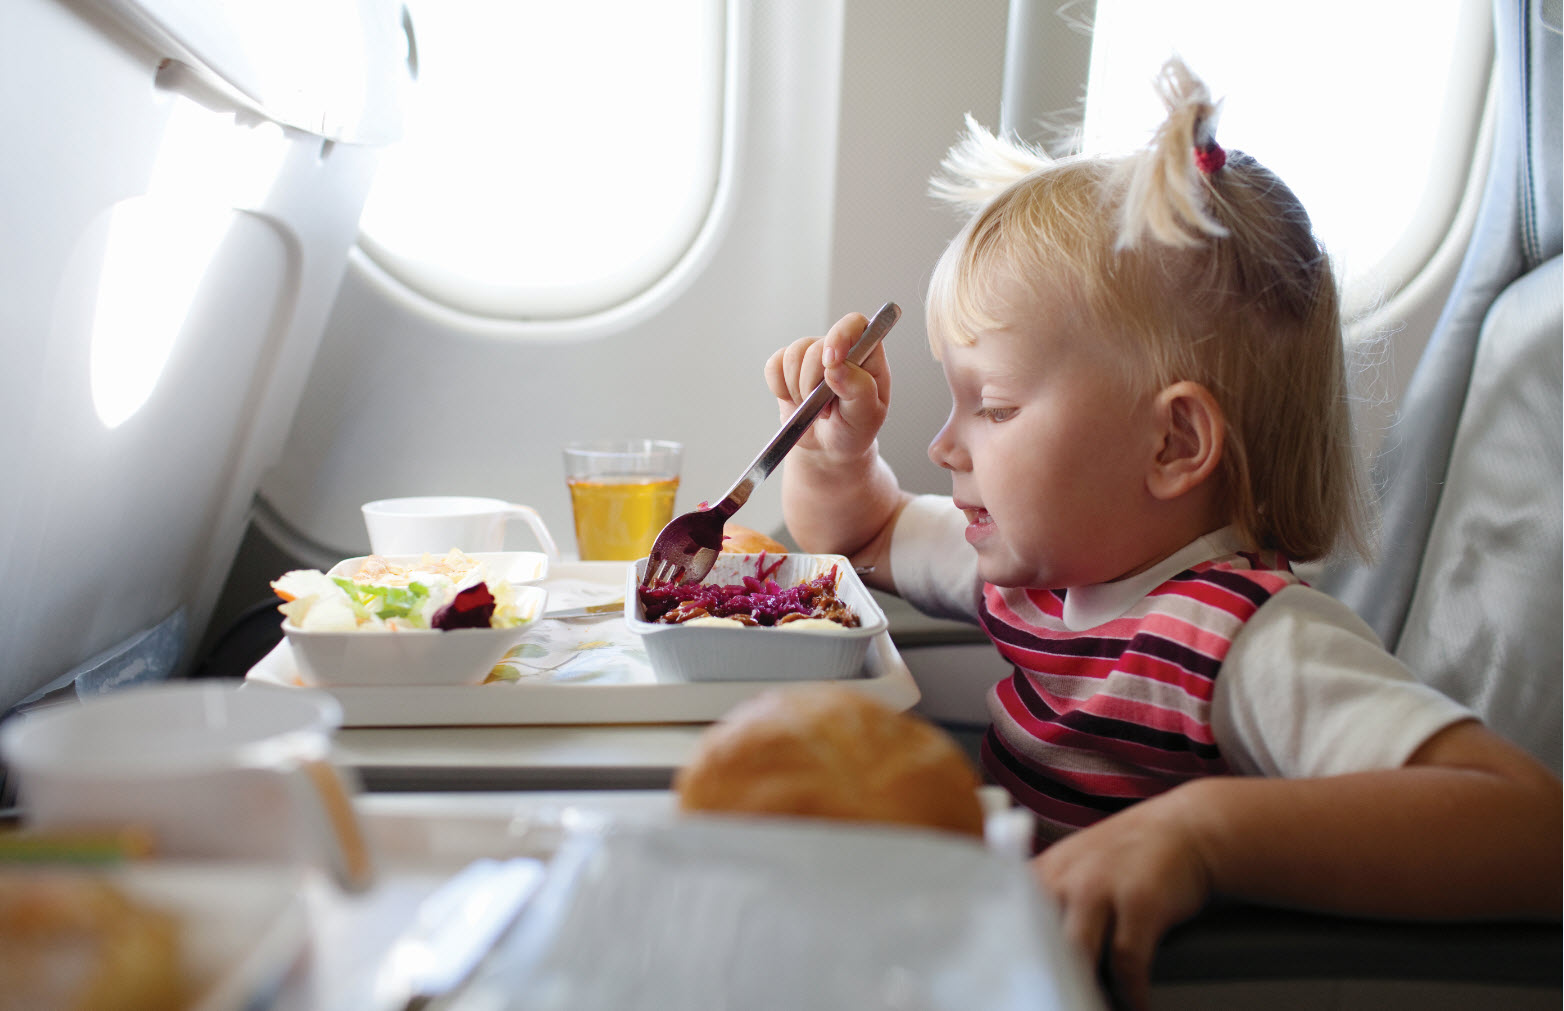 10 советов психолога, как успокоить ребенка в самолете